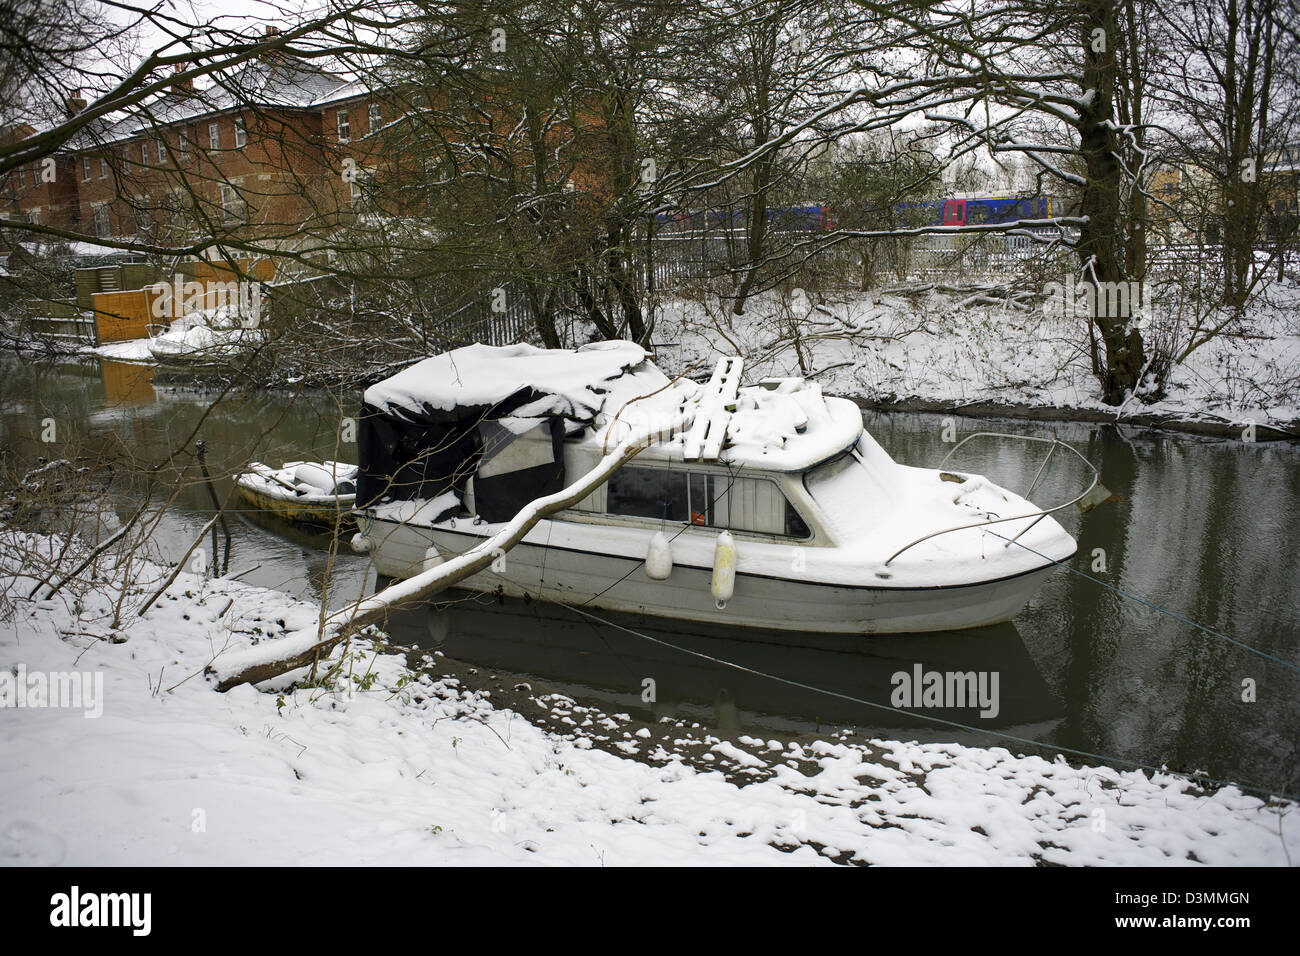 Winter on the river Jericho City of Oxford Oxfordshire Oxon England boat cabin cruiser snowed in snow winter scene snow scene Stock Photo